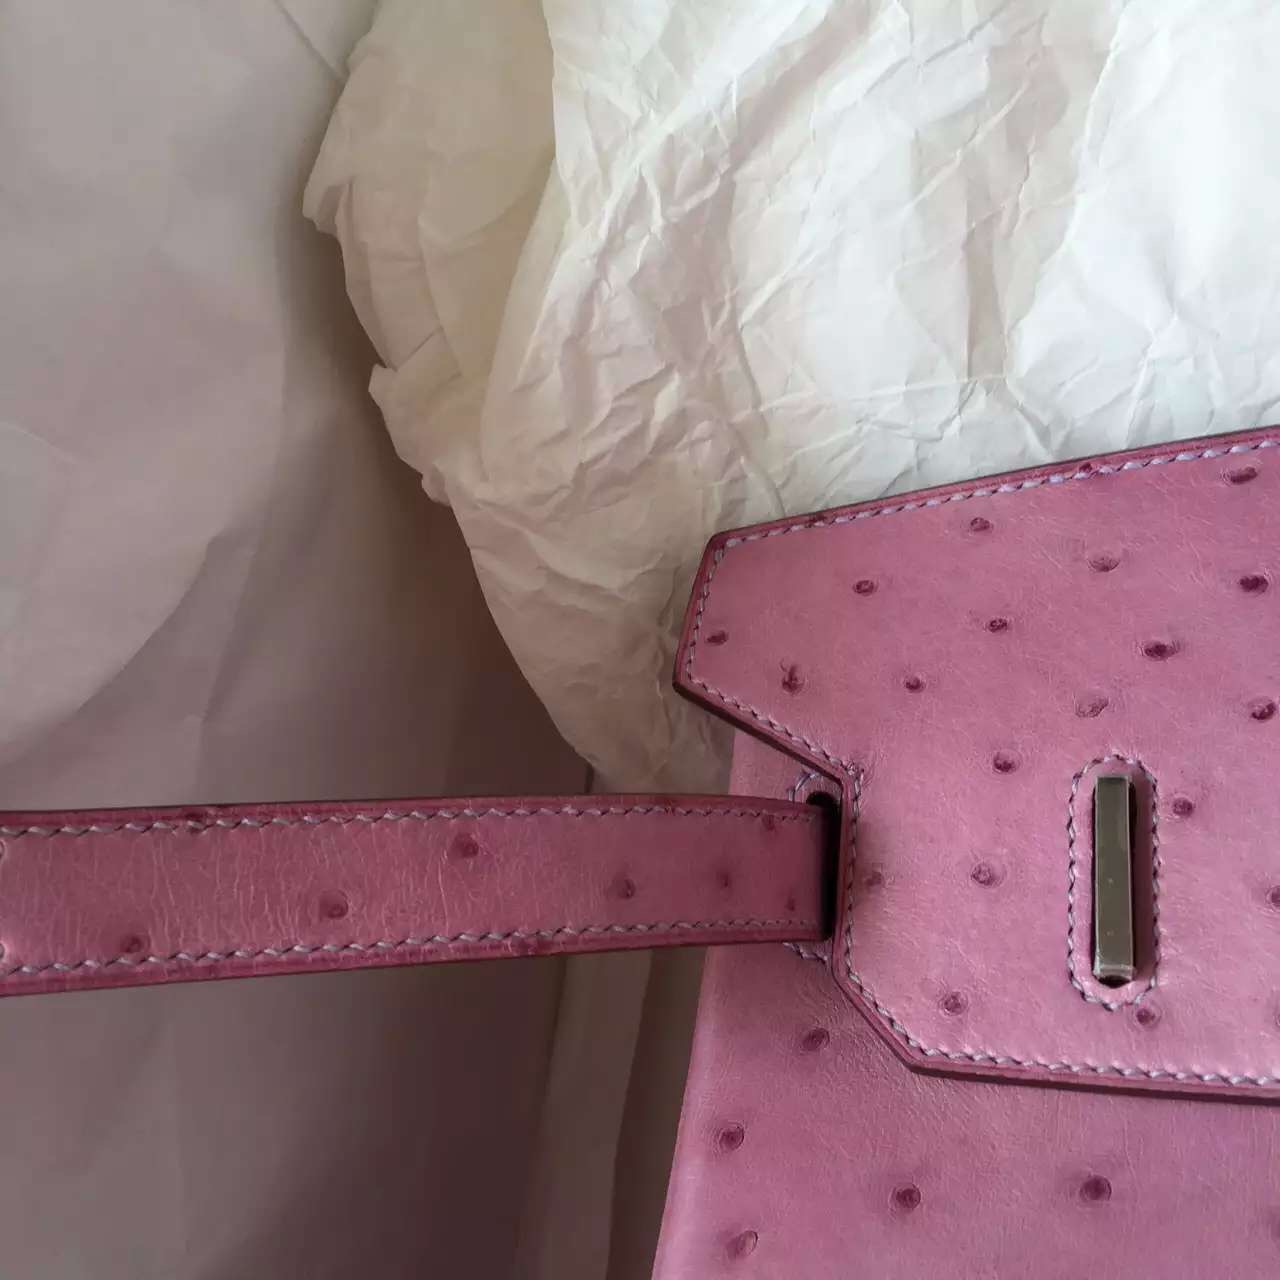 Wholesale Hermes Birkin Bag in Pink Purple Ostrich Leather Ladies&#8217; Handbag 30CM